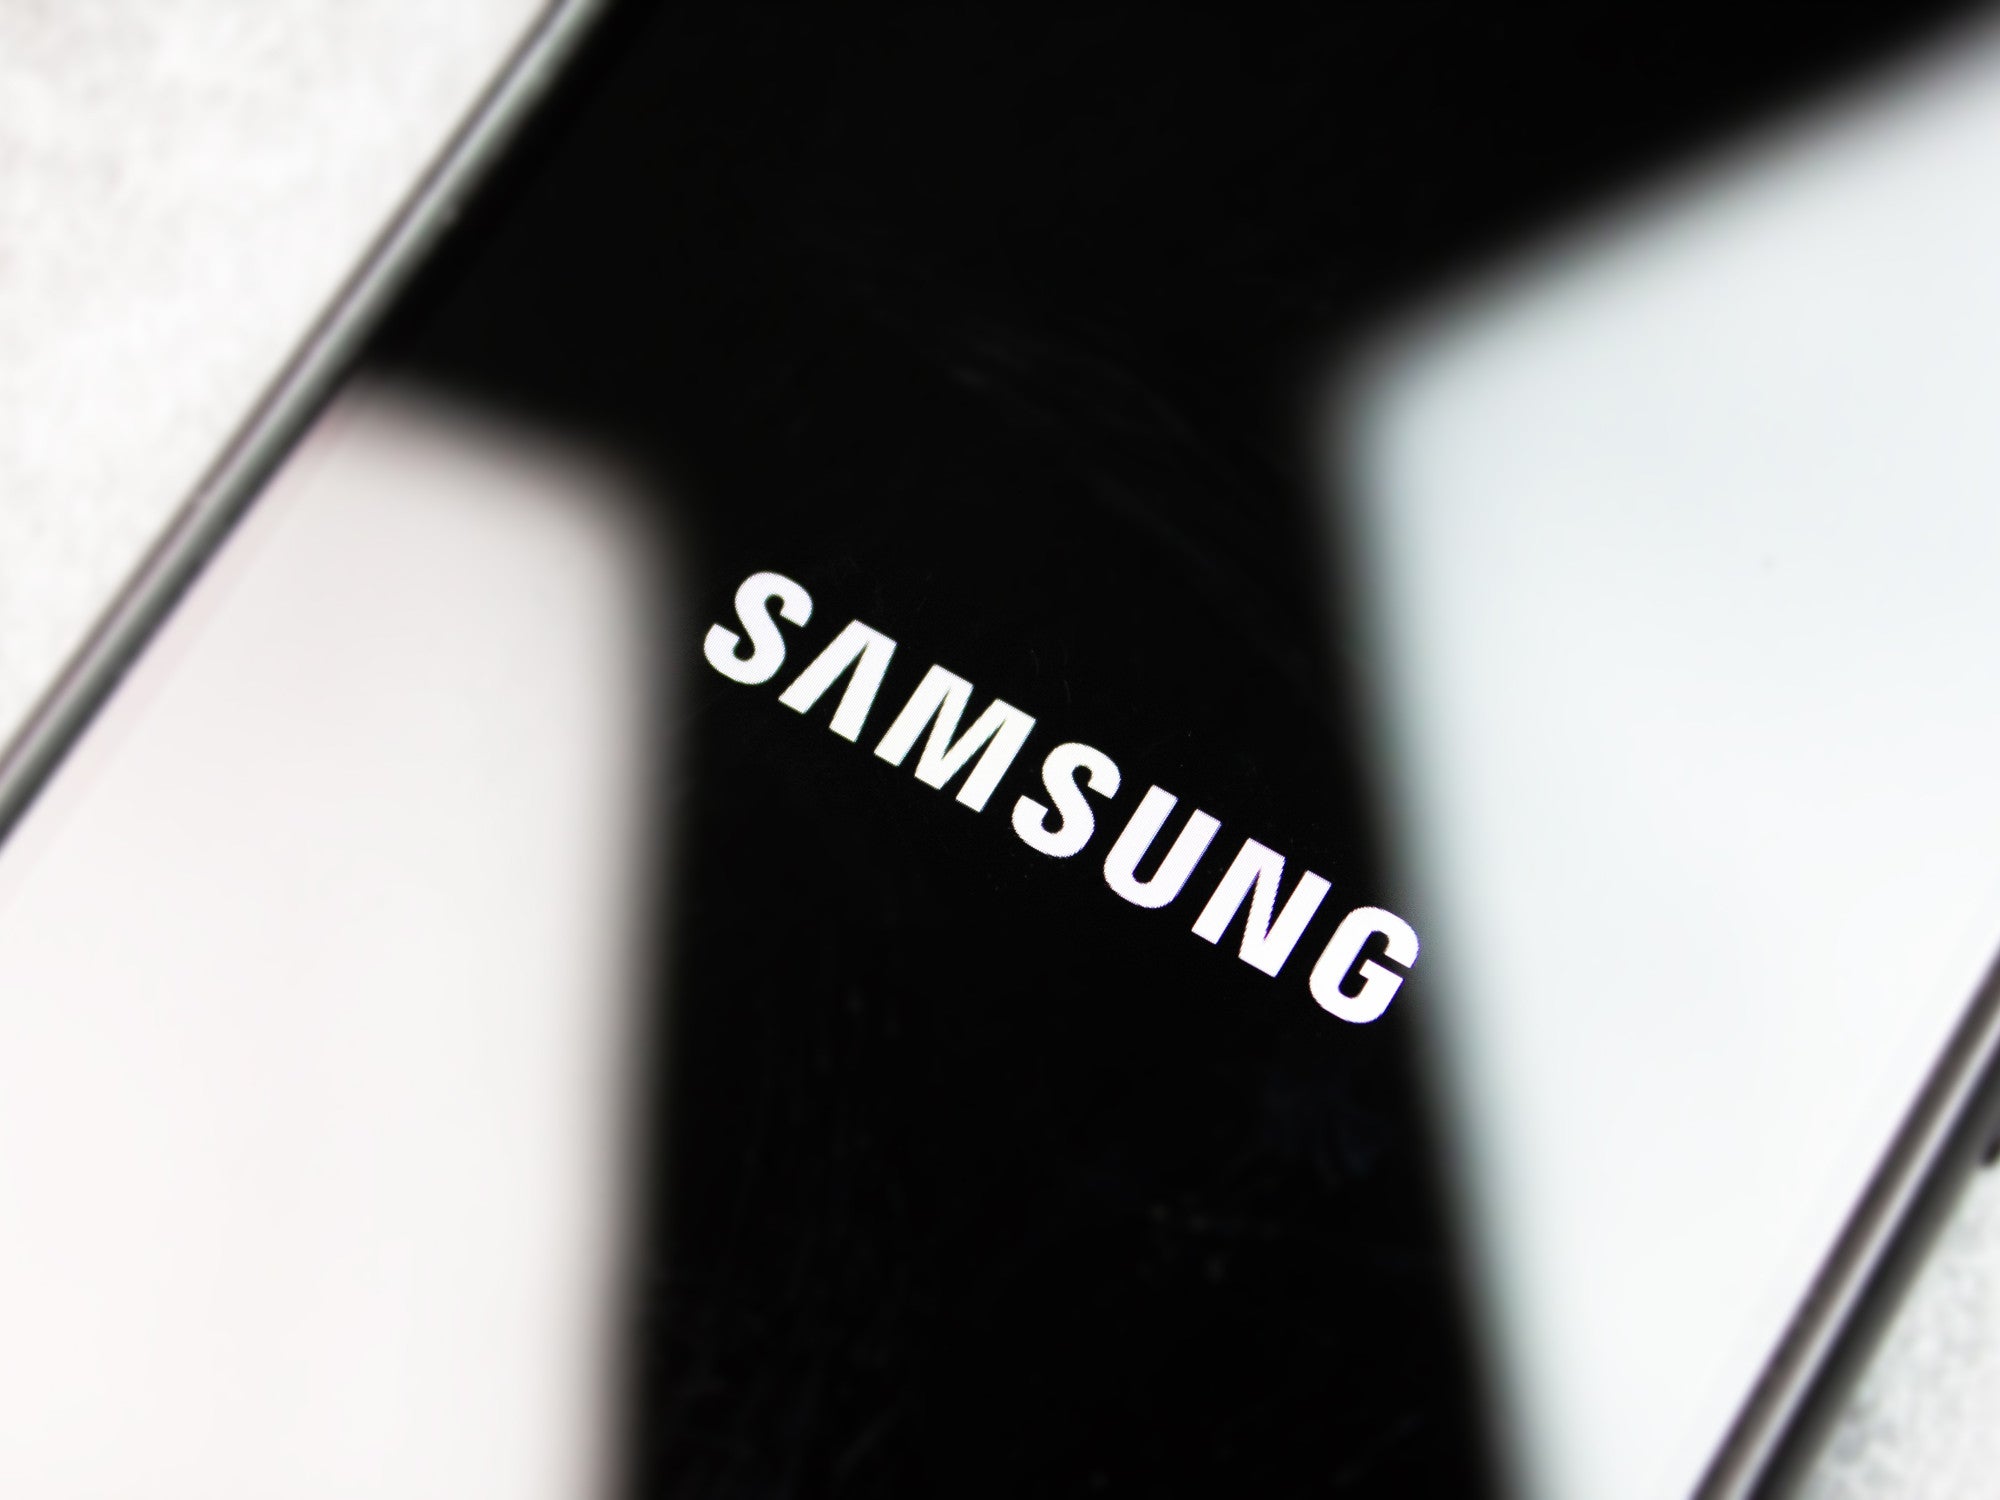 Display eines Smartphones von Samsung in der Nahaufnahme.